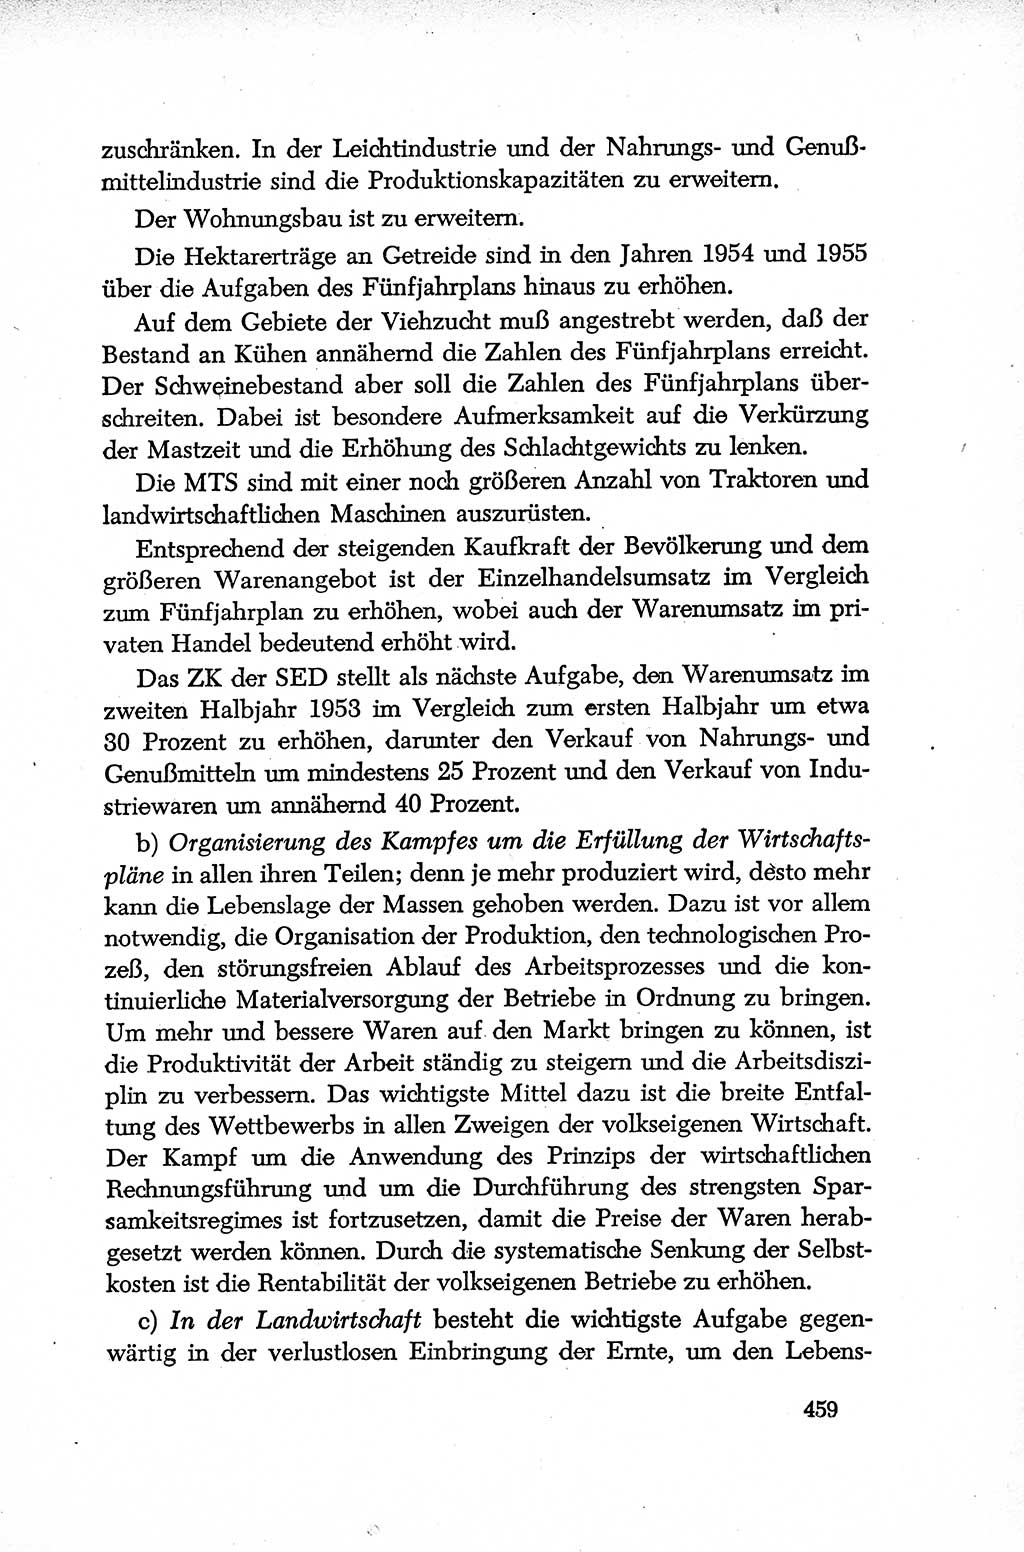 Dokumente der Sozialistischen Einheitspartei Deutschlands (SED) [Deutsche Demokratische Republik (DDR)] 1952-1953, Seite 459 (Dok. SED DDR 1952-1953, S. 459)